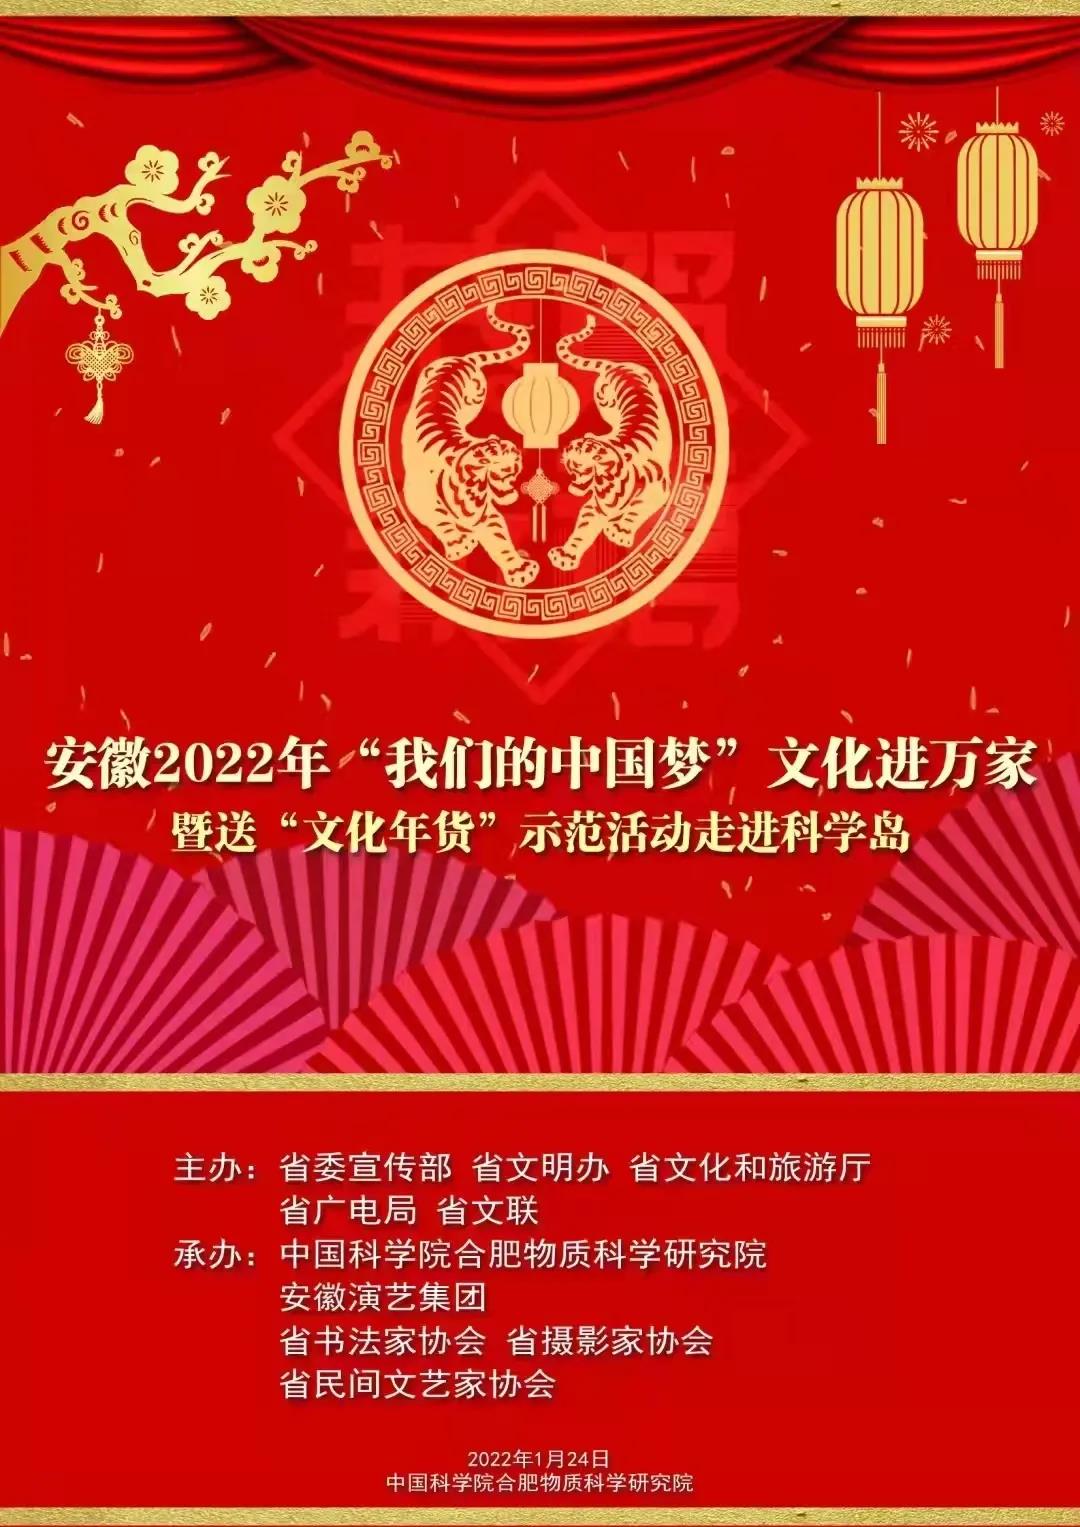 2022年“我们的中国梦”——文化进万家暨送“文化年货”示范活动走进科学岛(图1)